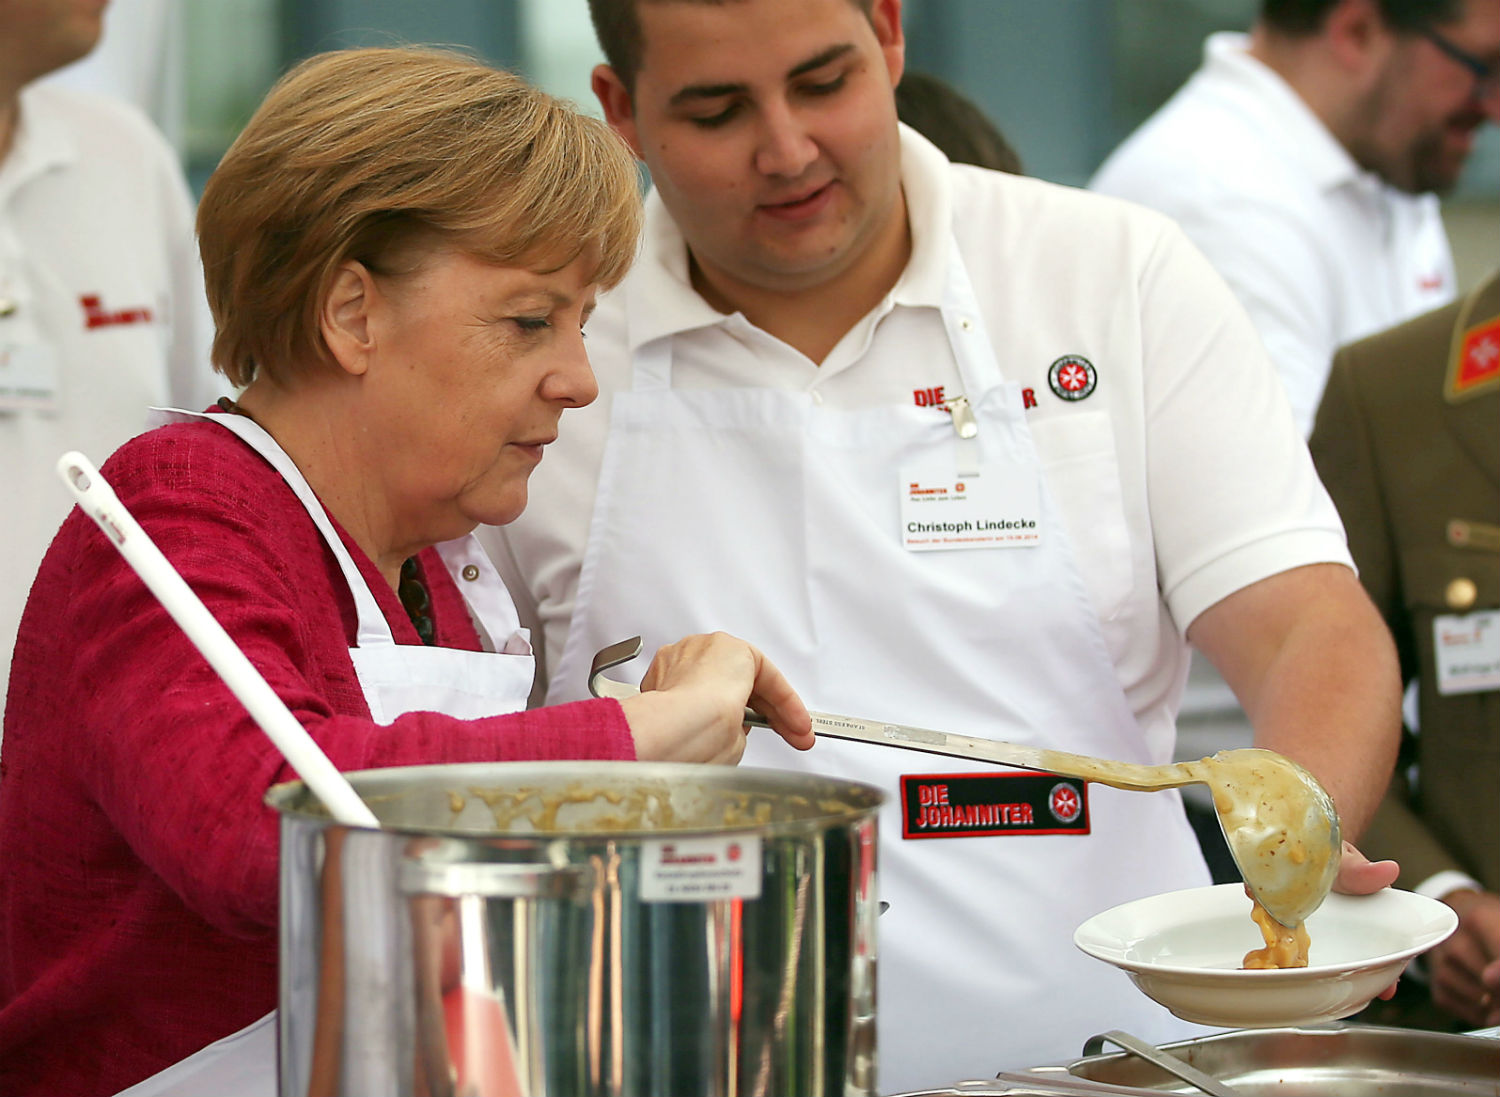 ¿Por qué Merkel comparte sopa de papa? ¿Ganará elección en Alemania?